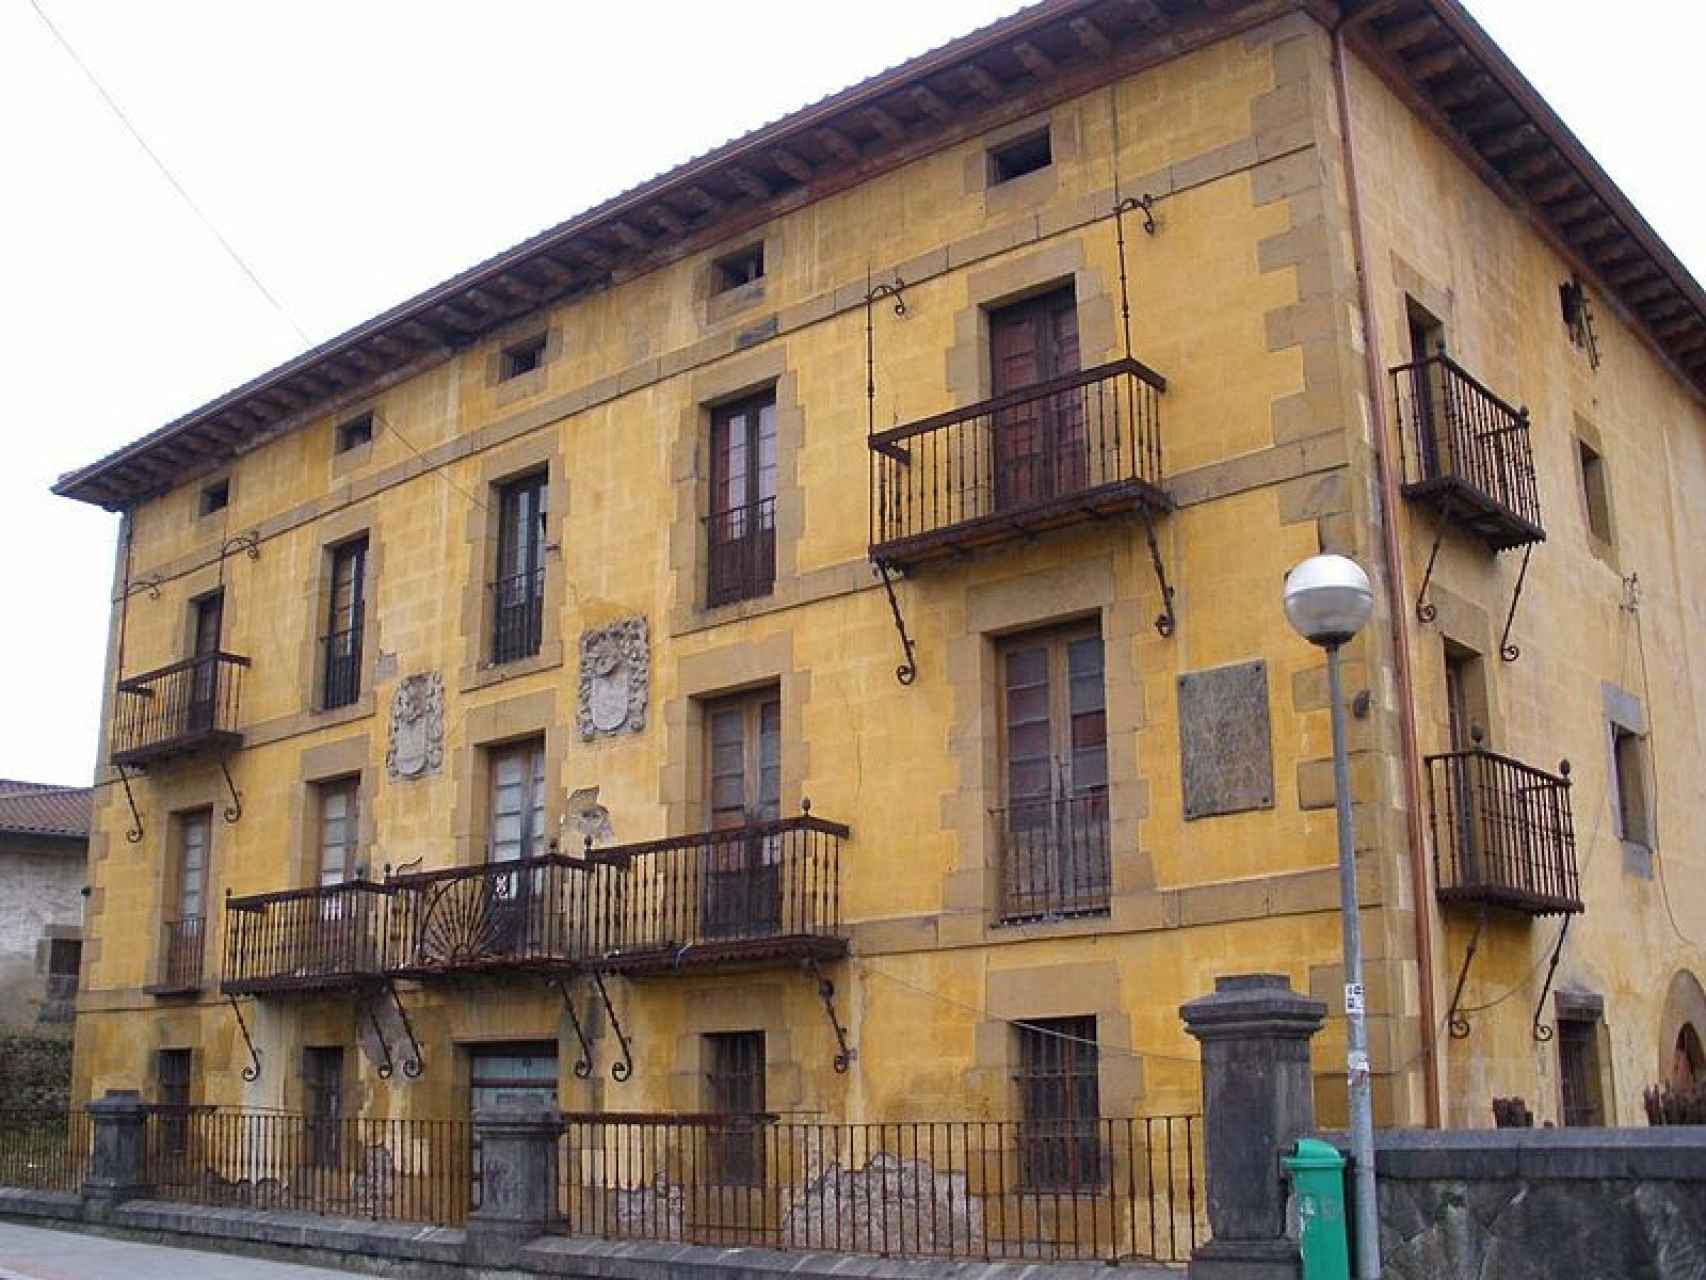 Casa-palacio de los De la Quadra Salcedo en Güeñes, Vizcaya.